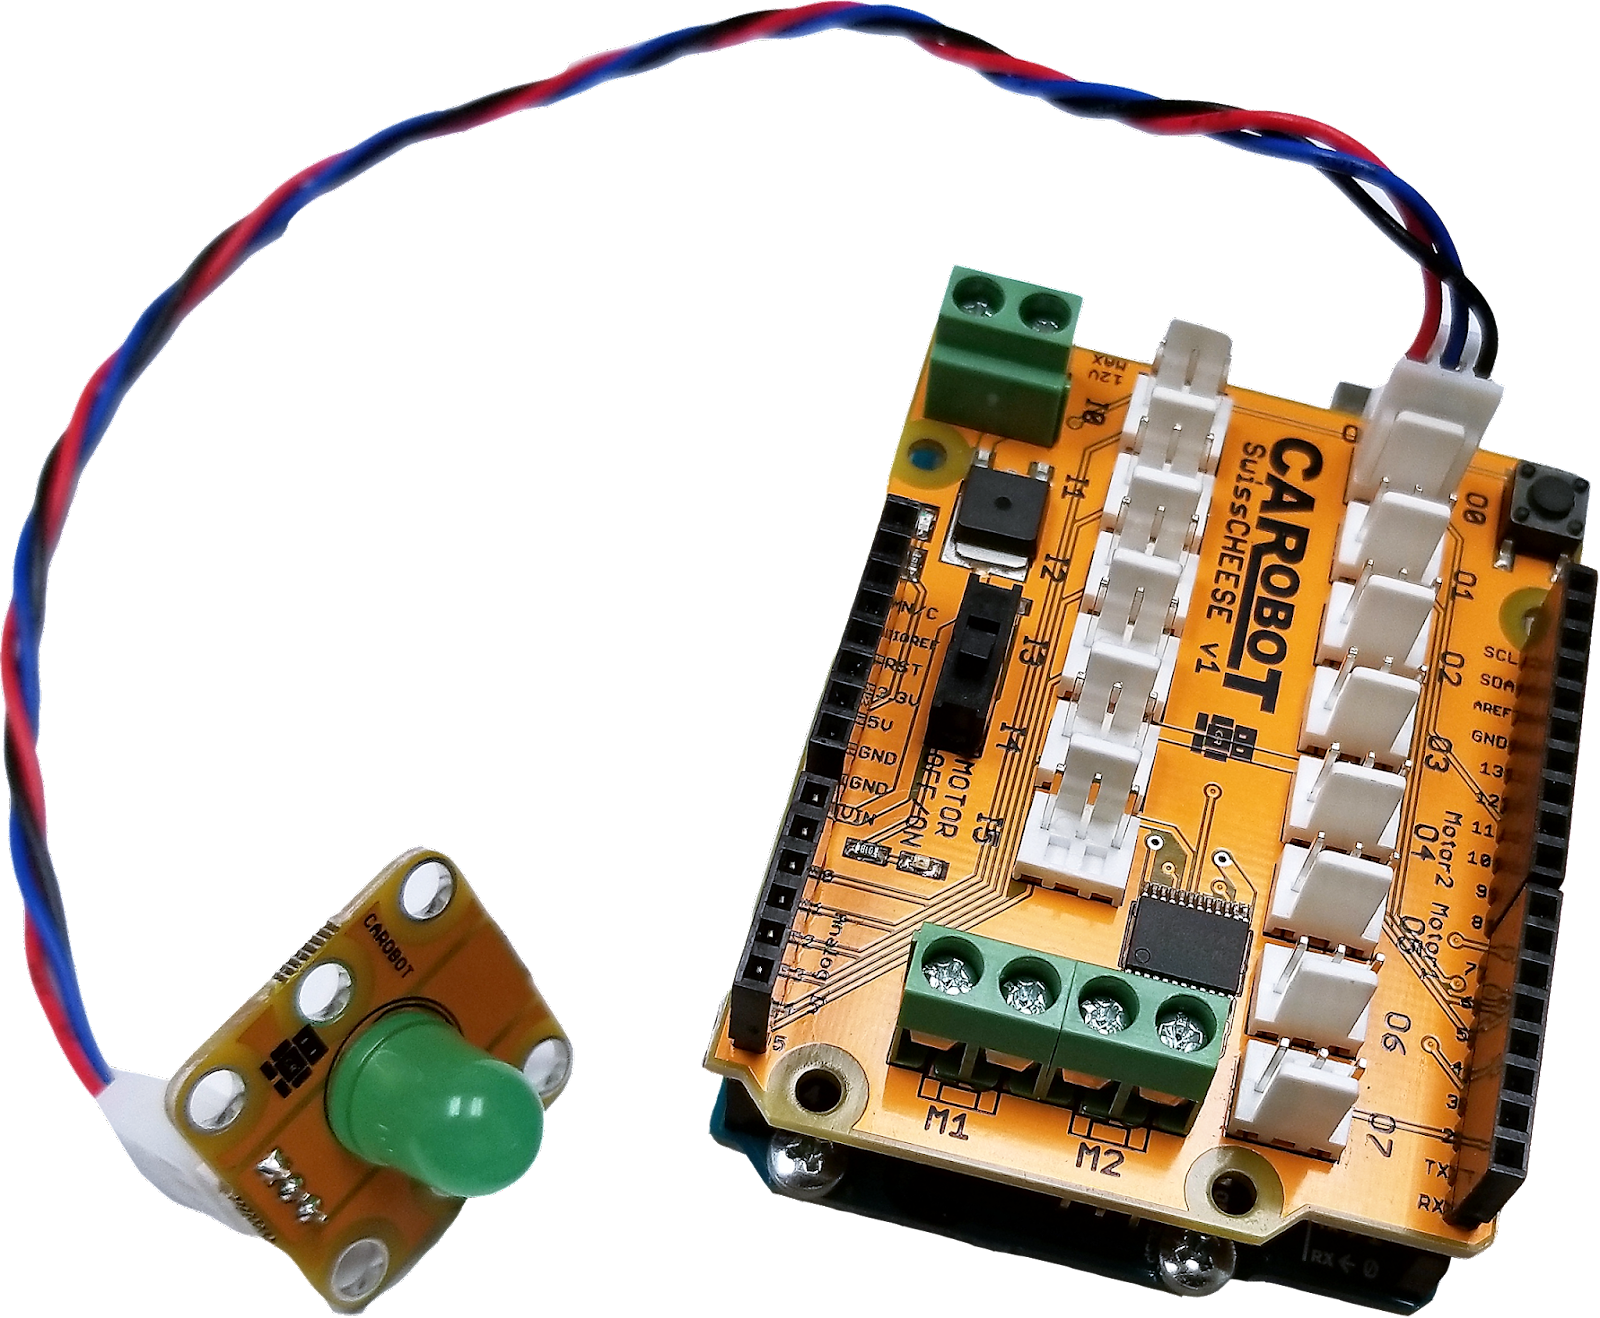 A CAROBOT SwissCHEESE on an Arduino with a green LED module.